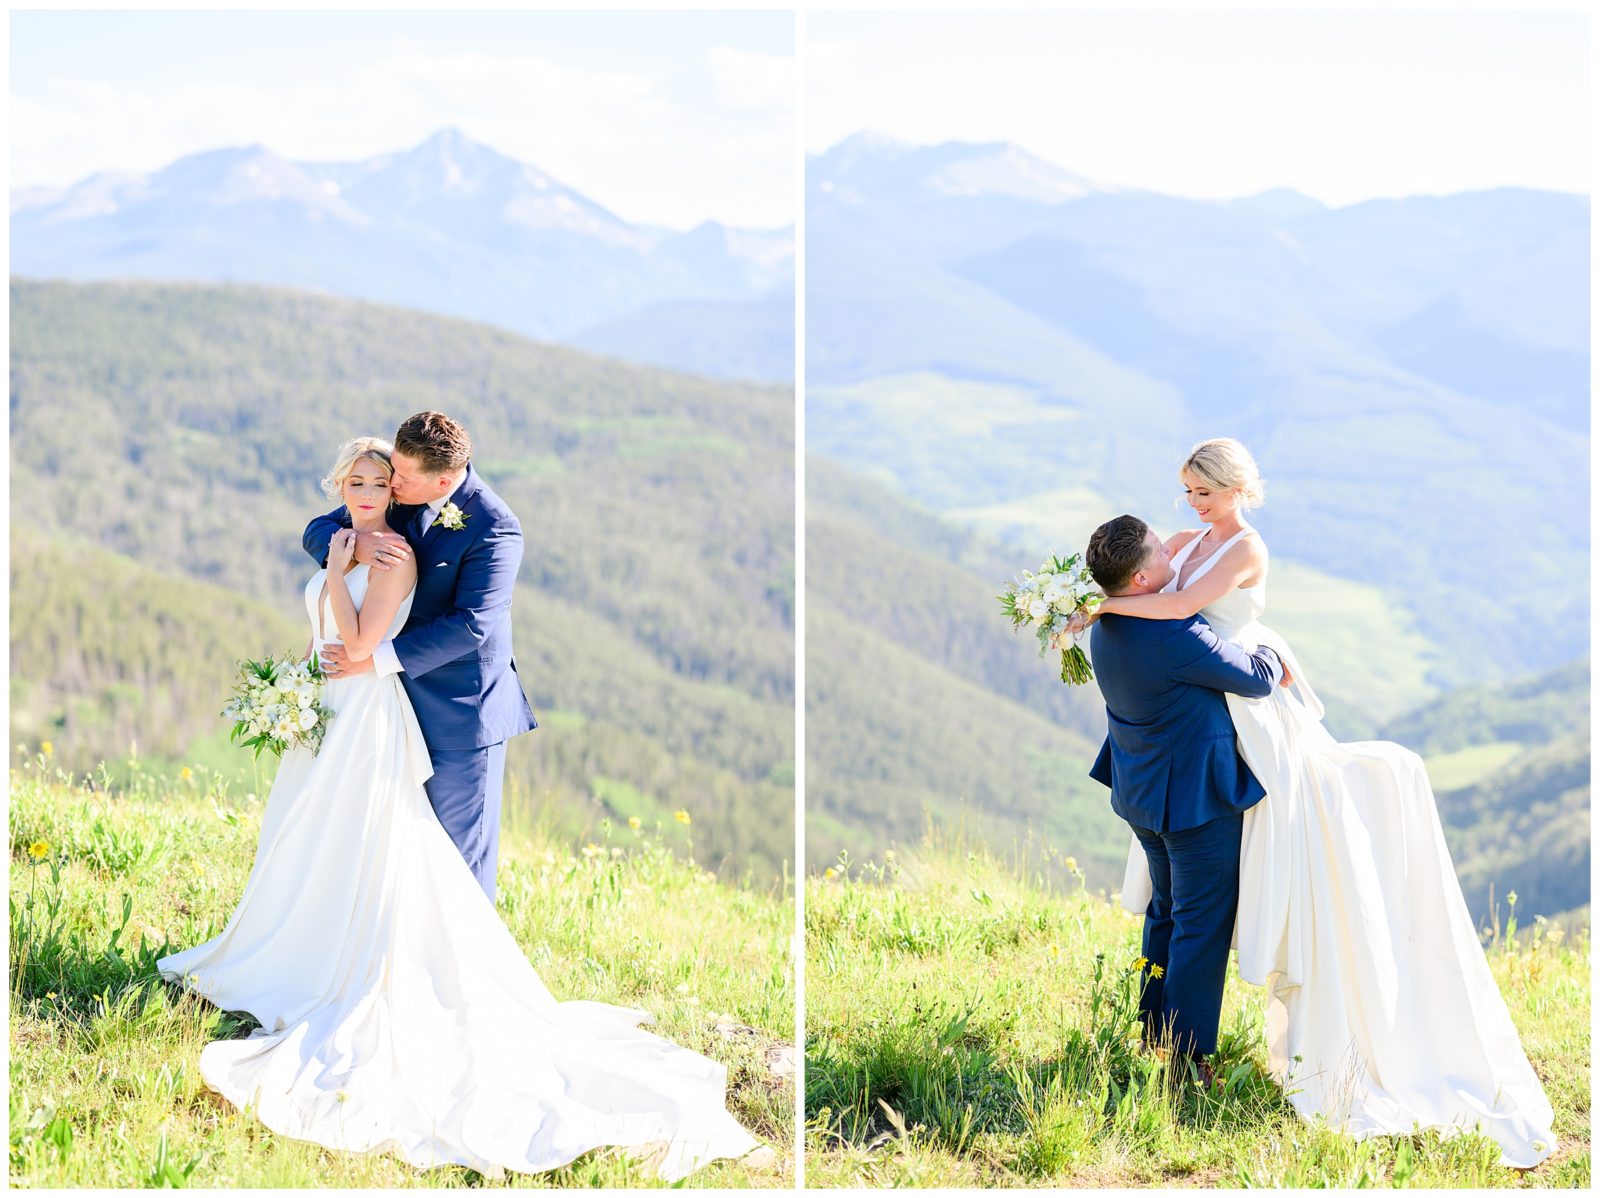 Mountaintop Wedding Venues in Vail Colorado